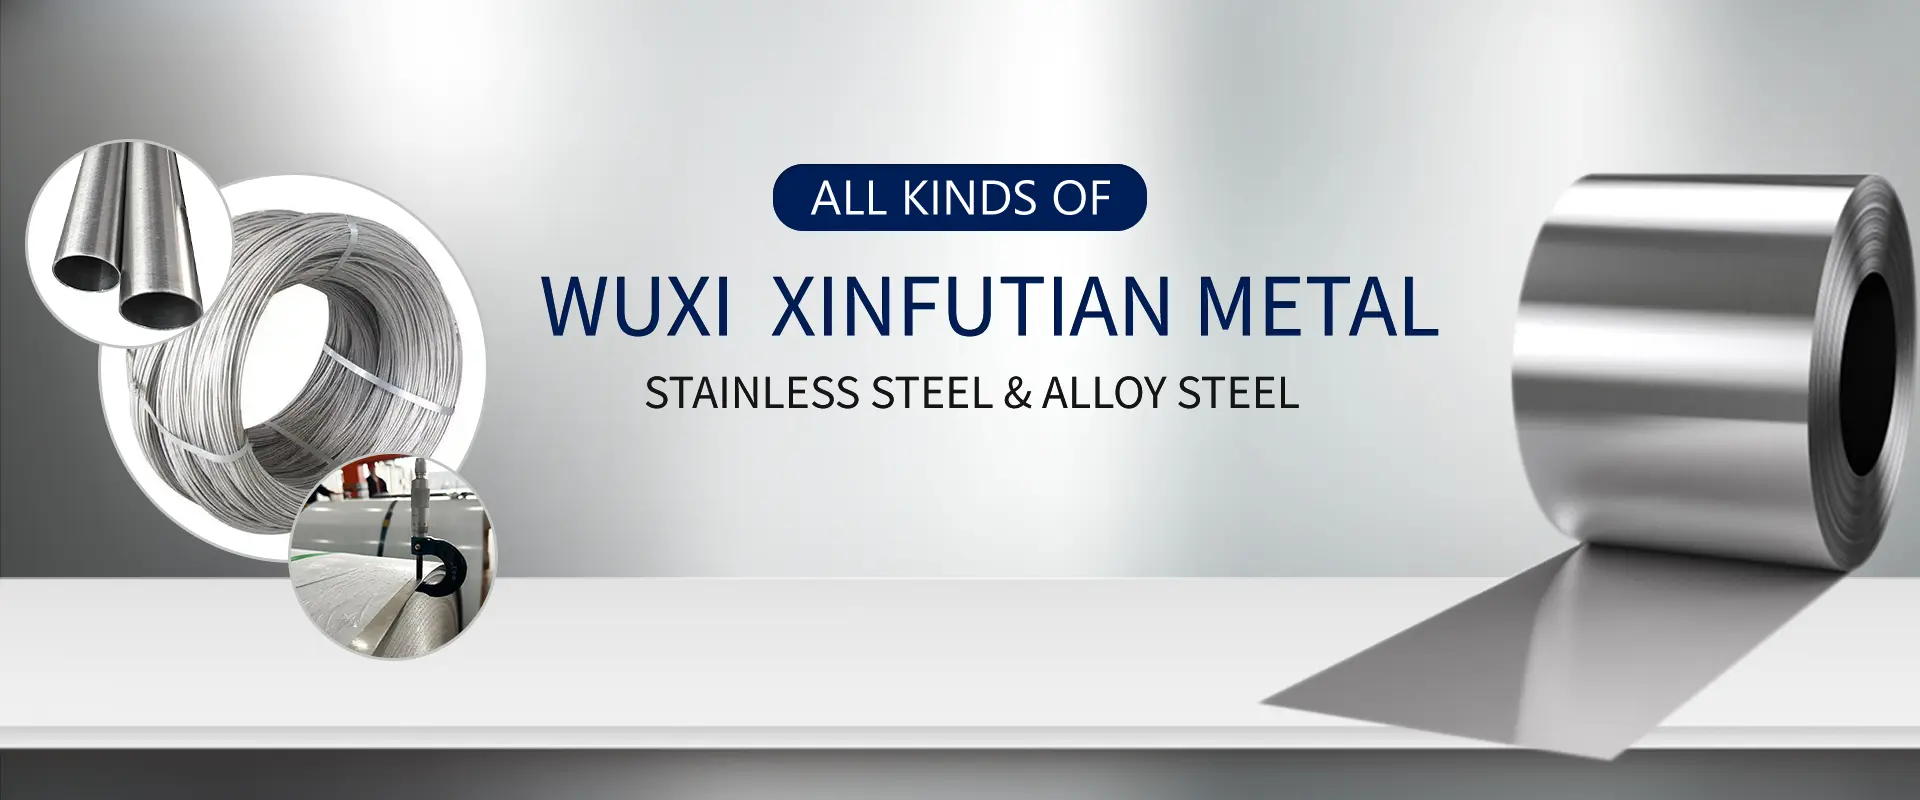 WuXi Xinfutian Metal